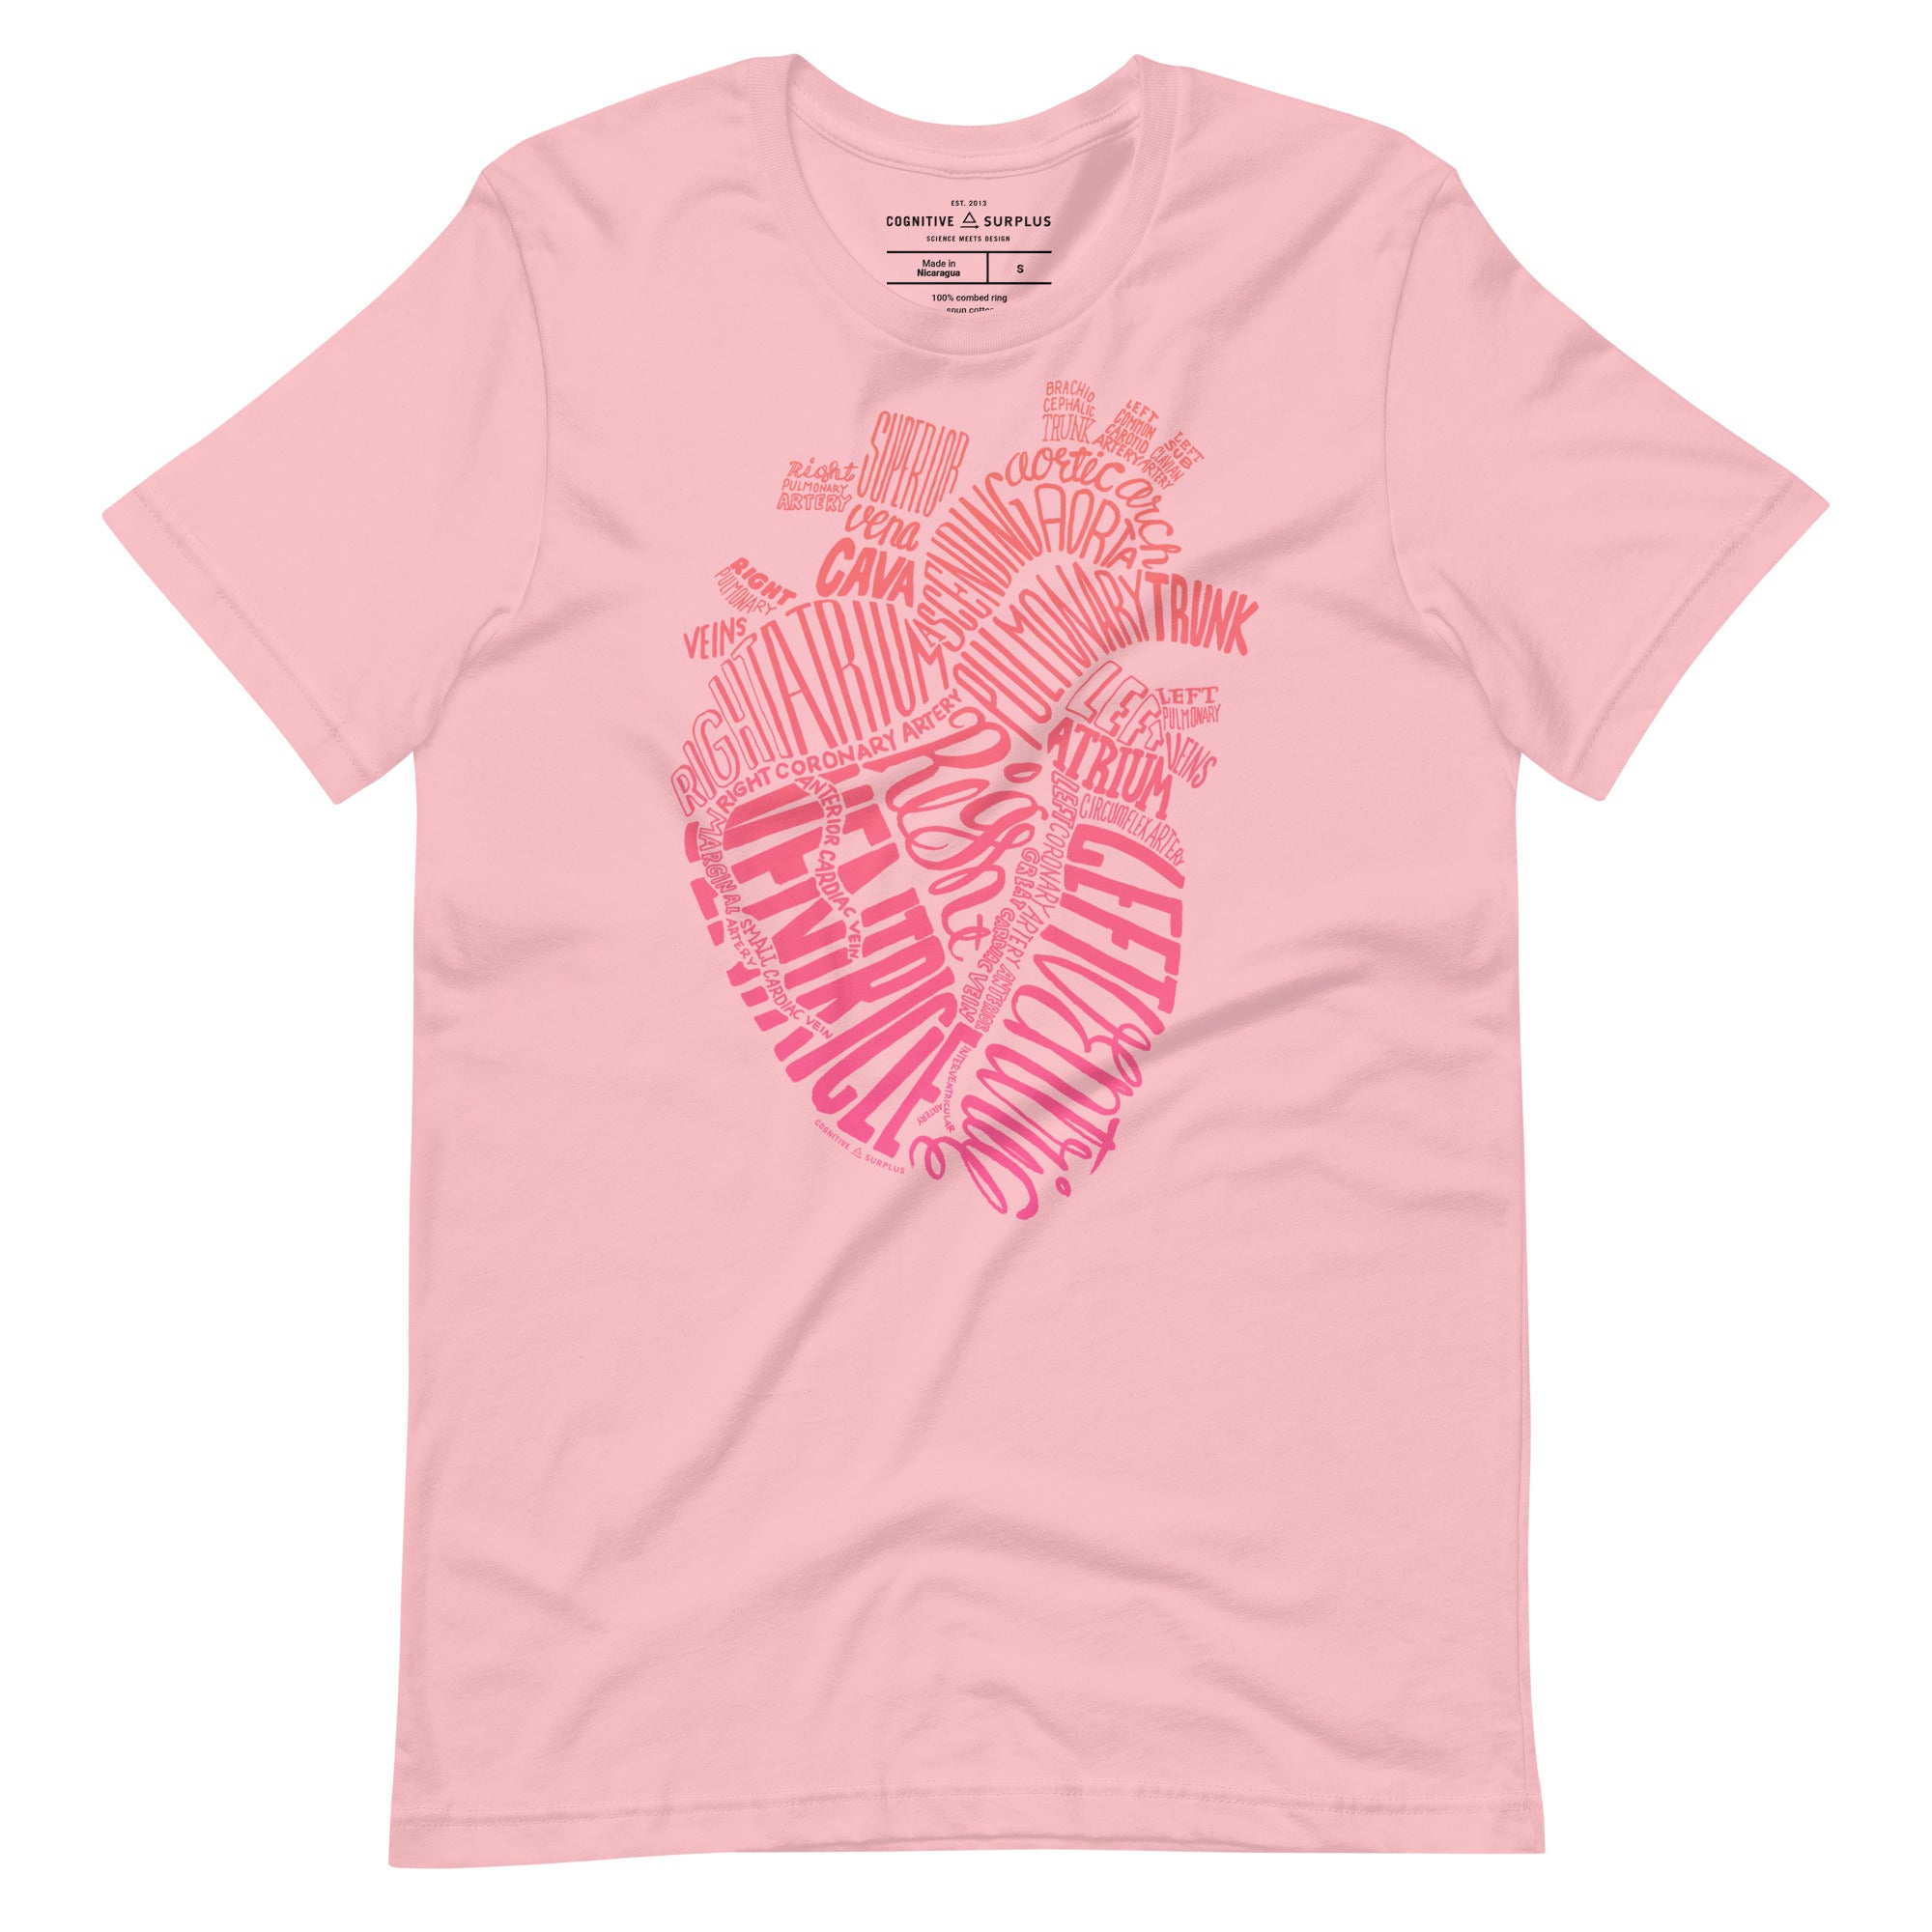 unisex-staple-t-shirt-pink-front-654a7289b4a6e.jpg